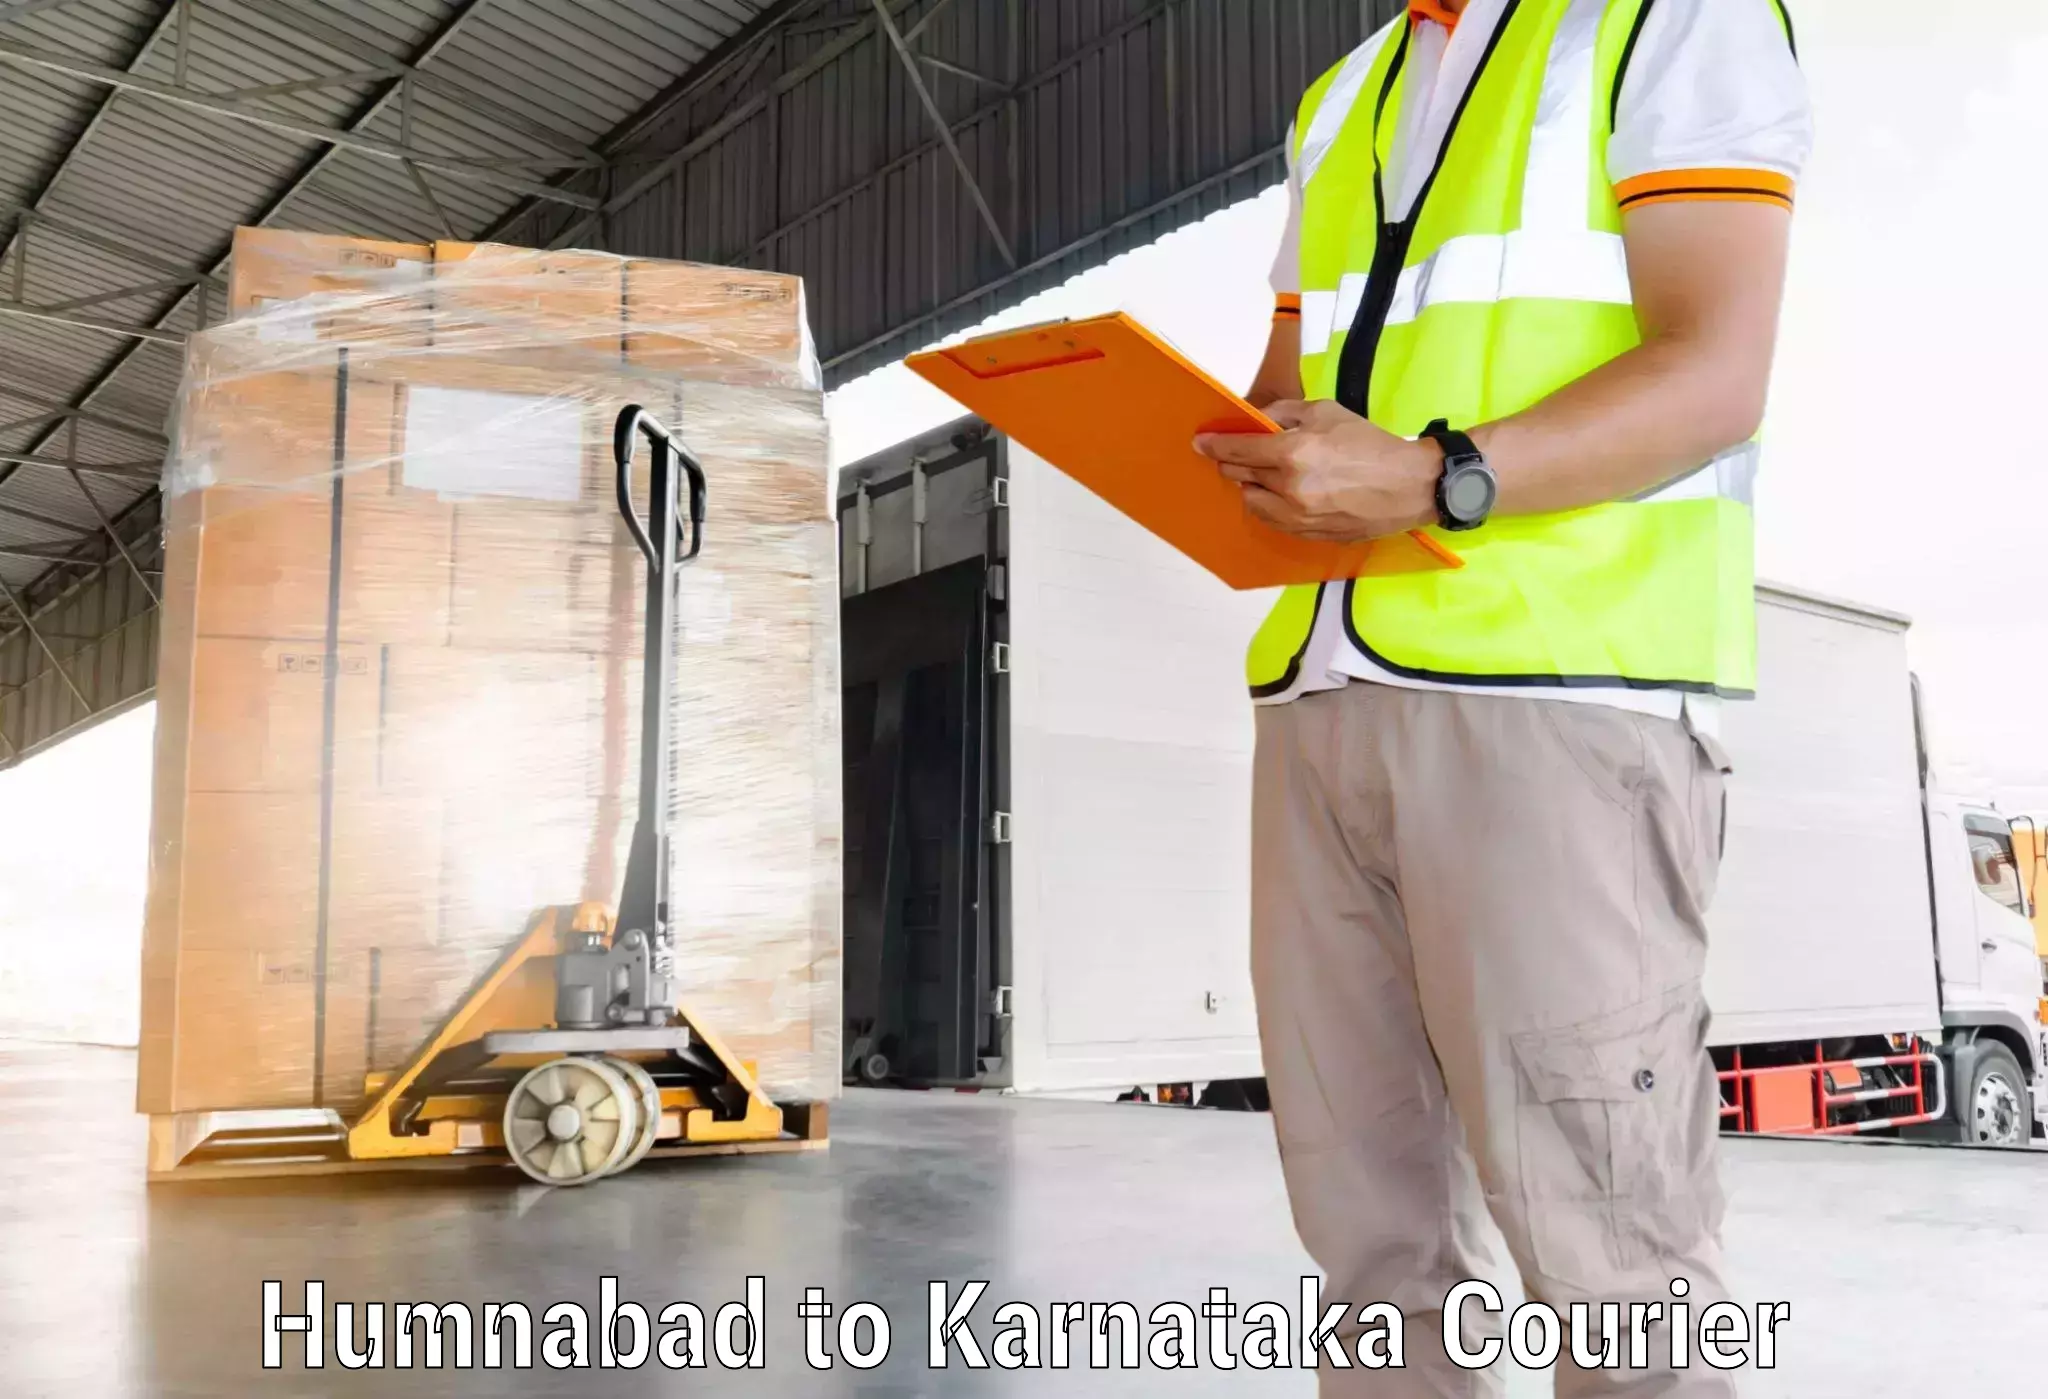 Flexible parcel services Humnabad to Kanjarakatte